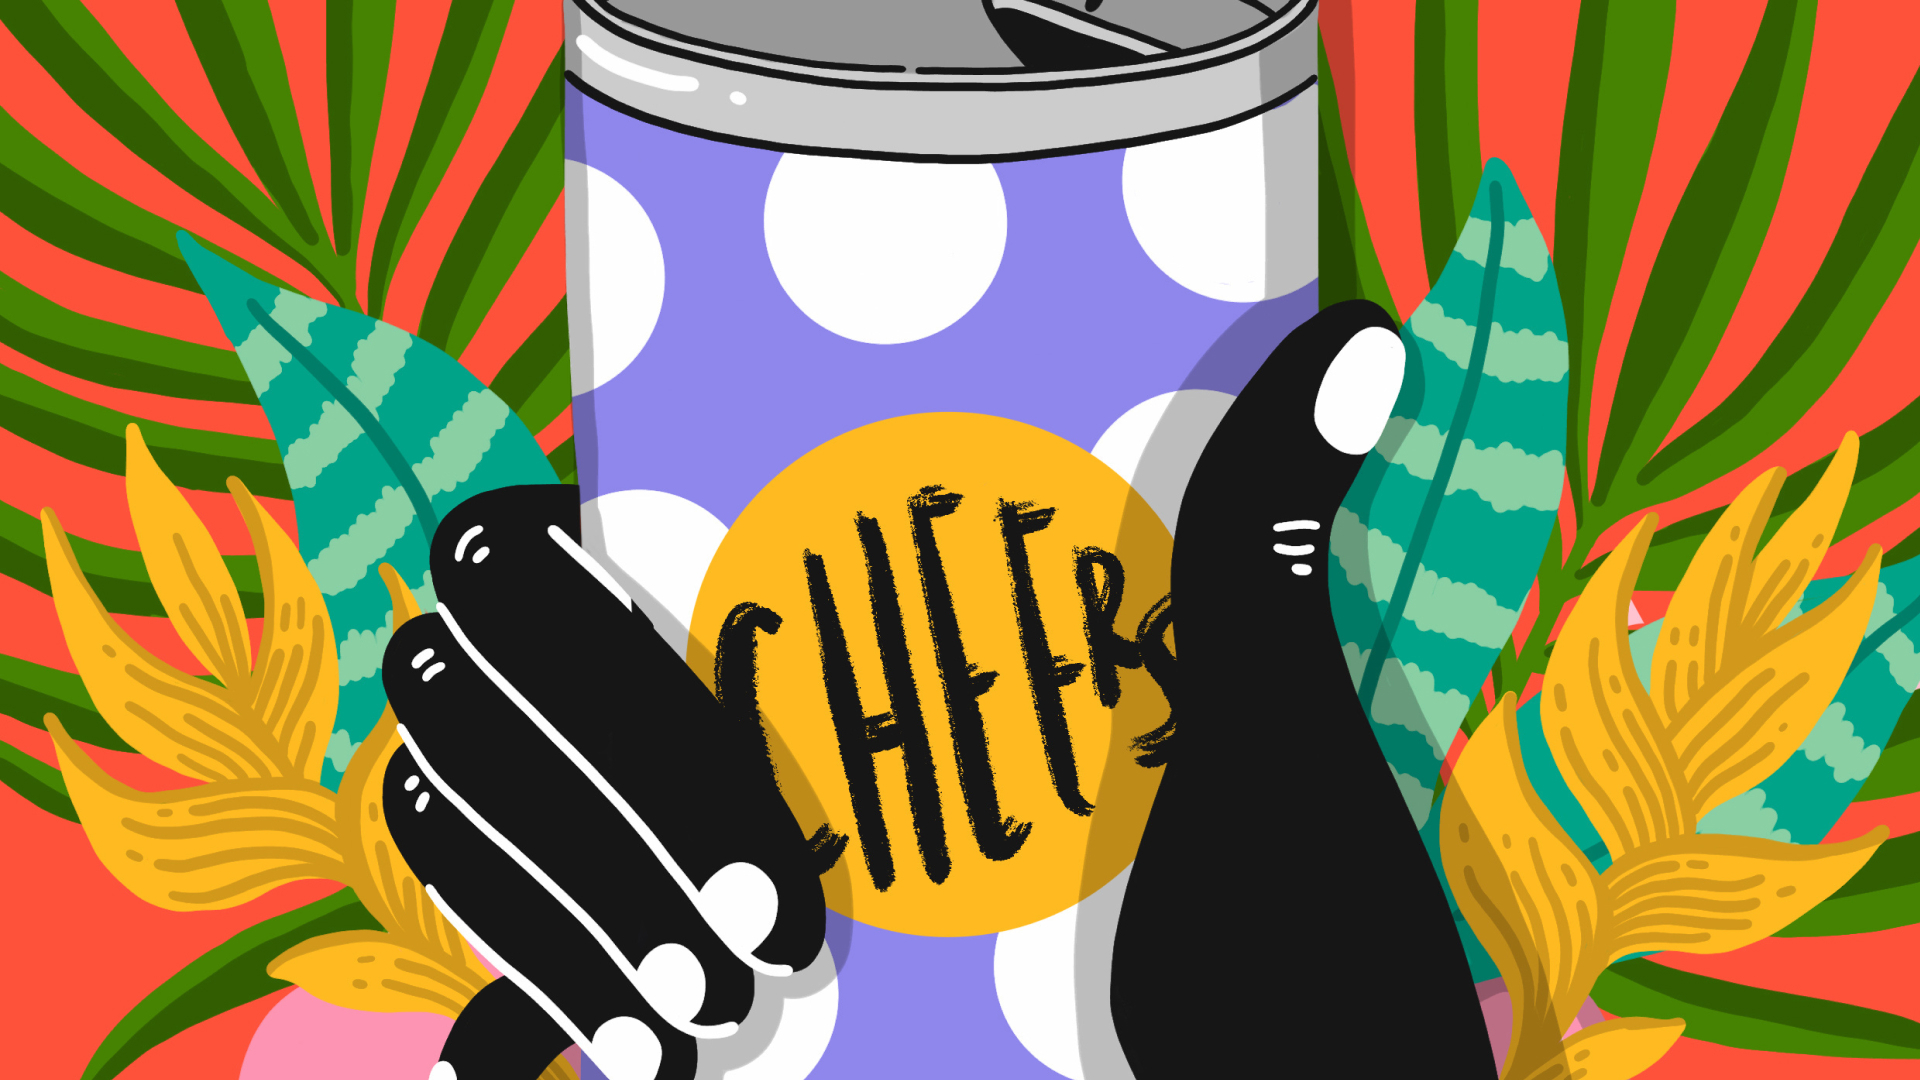 Ilustración colorida de una mano sosteniendo una lata que dice “salud”.